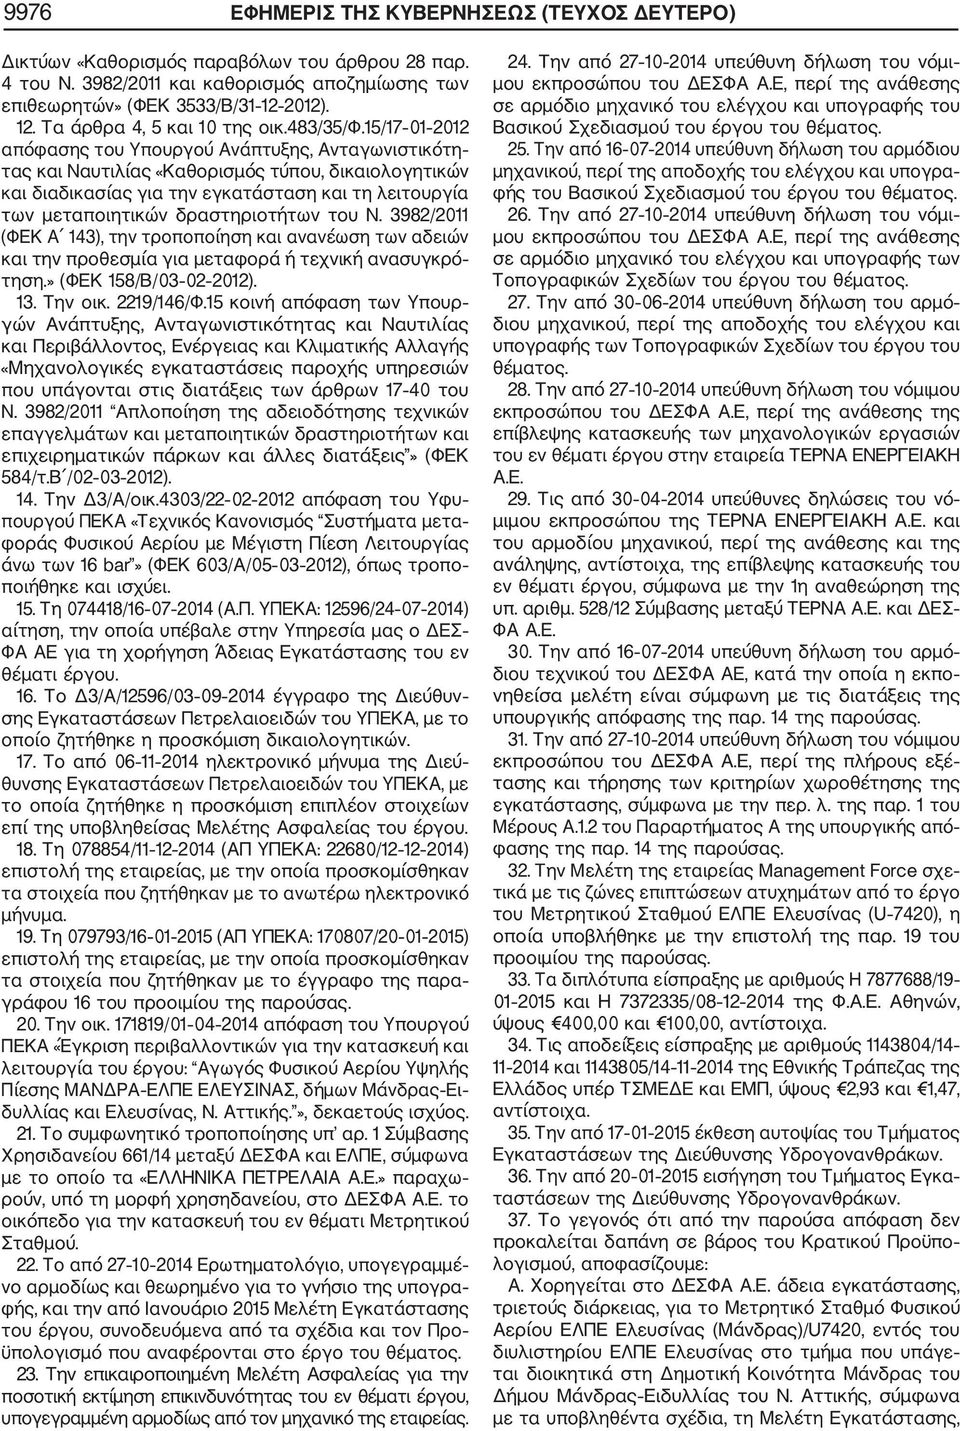 15/17 01 2012 απόφασης του Υπουργού Ανάπτυξης, Ανταγωνιστικότη τας και Ναυτιλίας «Καθορισμός τύπου, δικαιολογητικών και διαδικασίας για την εγκατάσταση και τη λειτουργία των μεταποιητικών